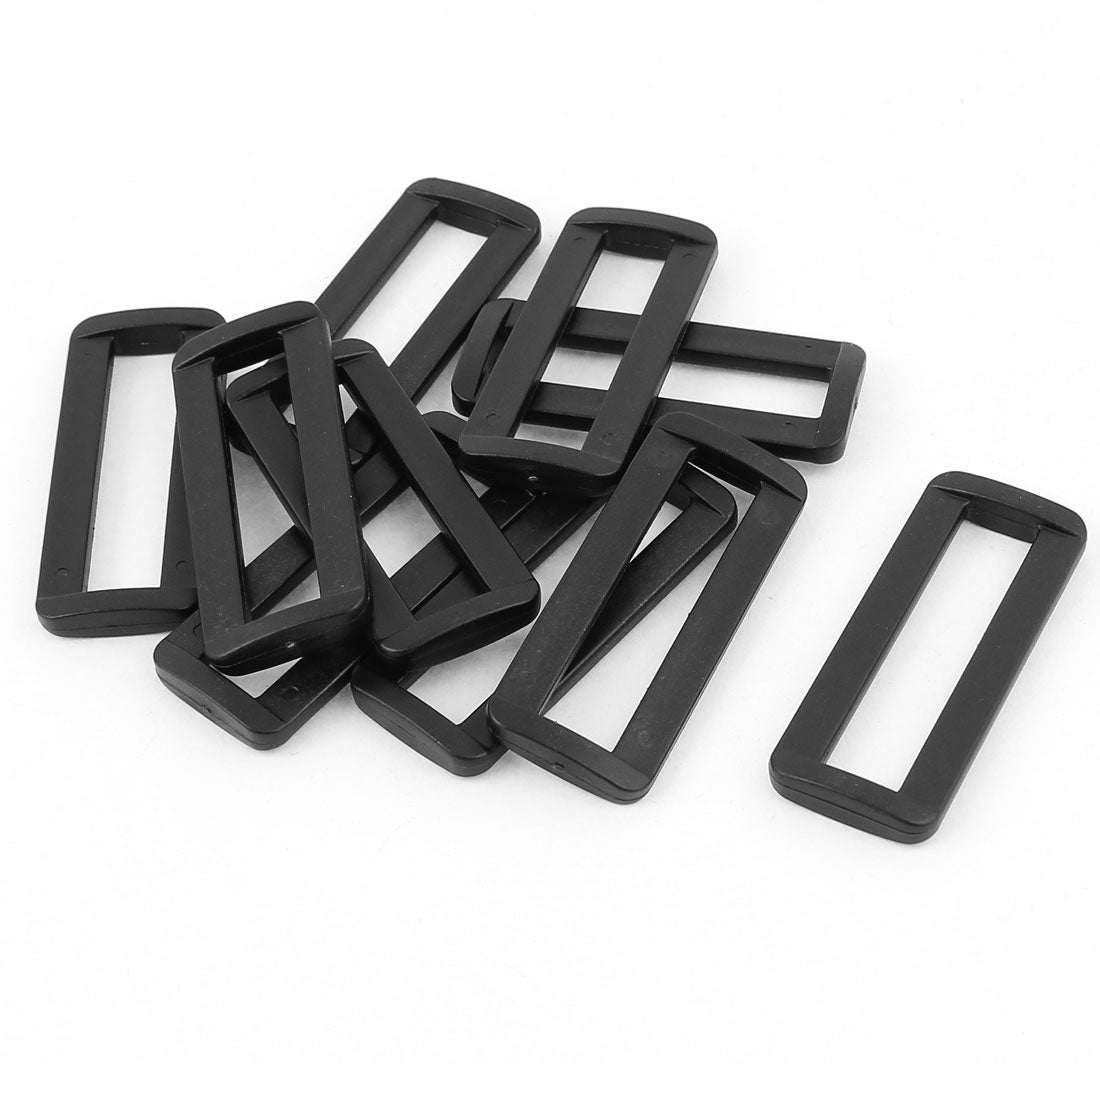 uxcell Uxcell 10 Pcs Black Plastic Bag Bar Slides Buckles for 50mm Webbing Strap